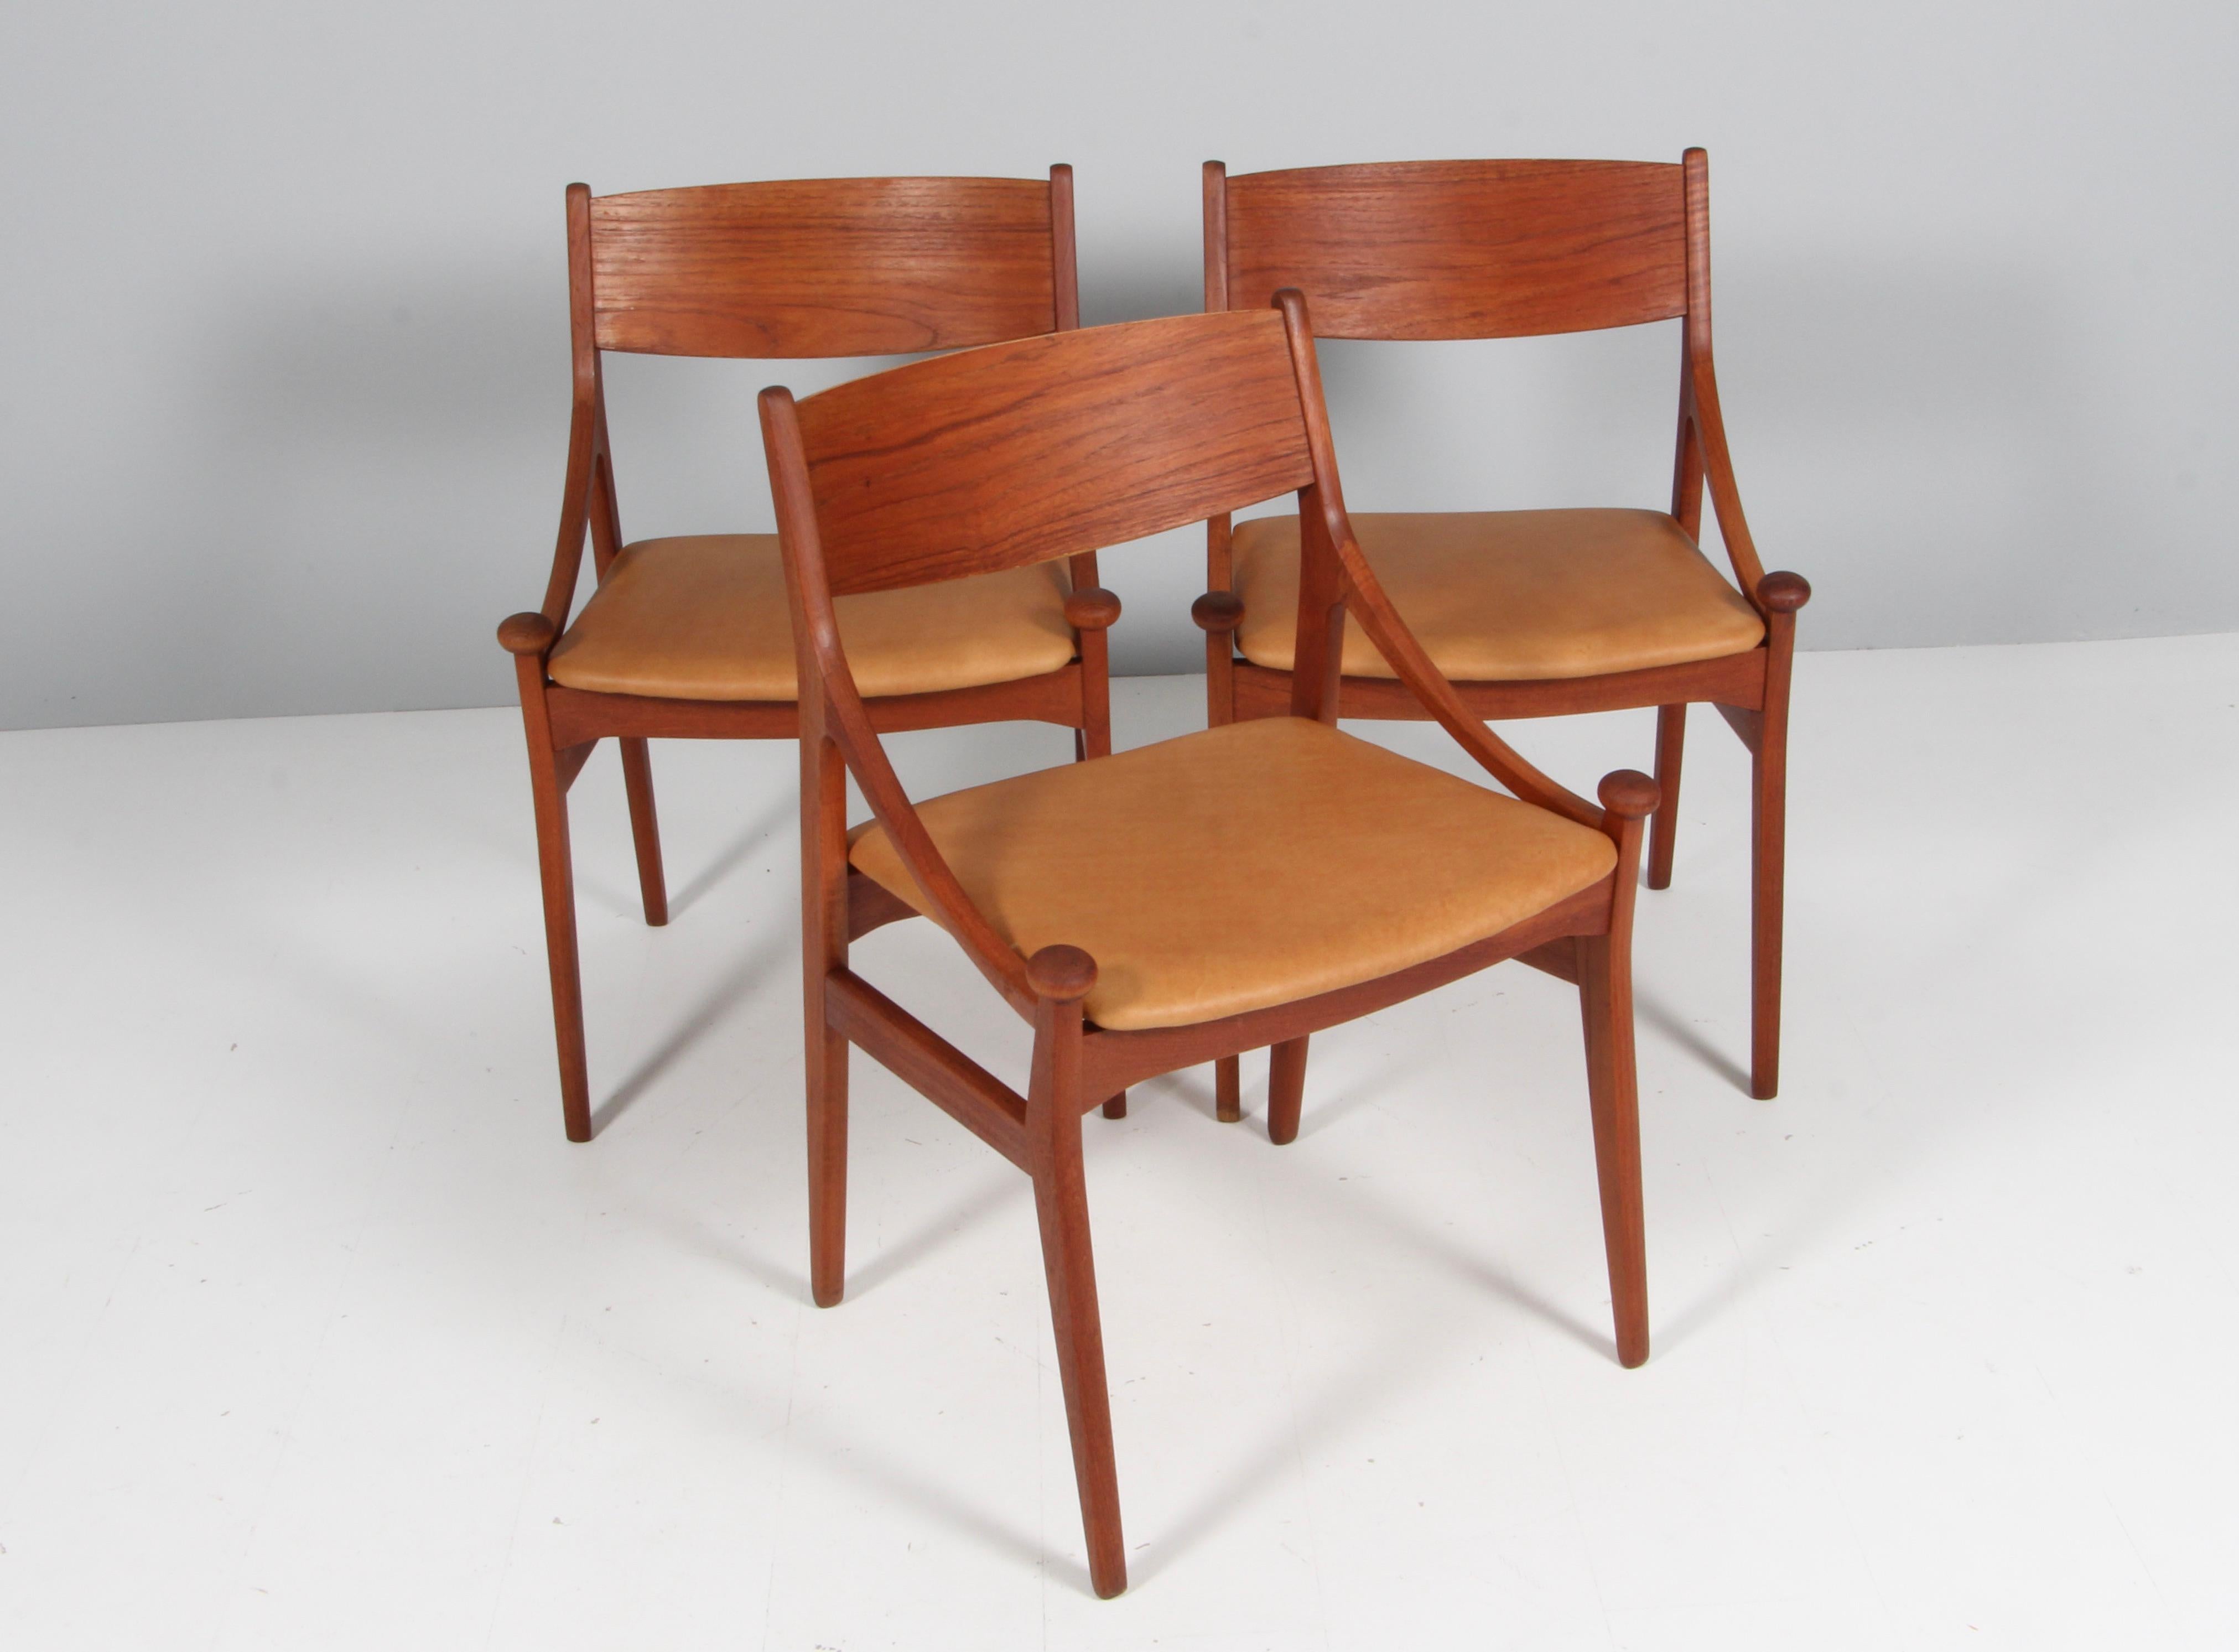 Vestervig Eriksen set of three dining chairs in partly solid teak. 

Seats new upholstered with tan vintage aniline leather.

Made by Brdr. Tromborg’s Eftf., Møbelfabrik Vestervig Eriksen Aarhus.